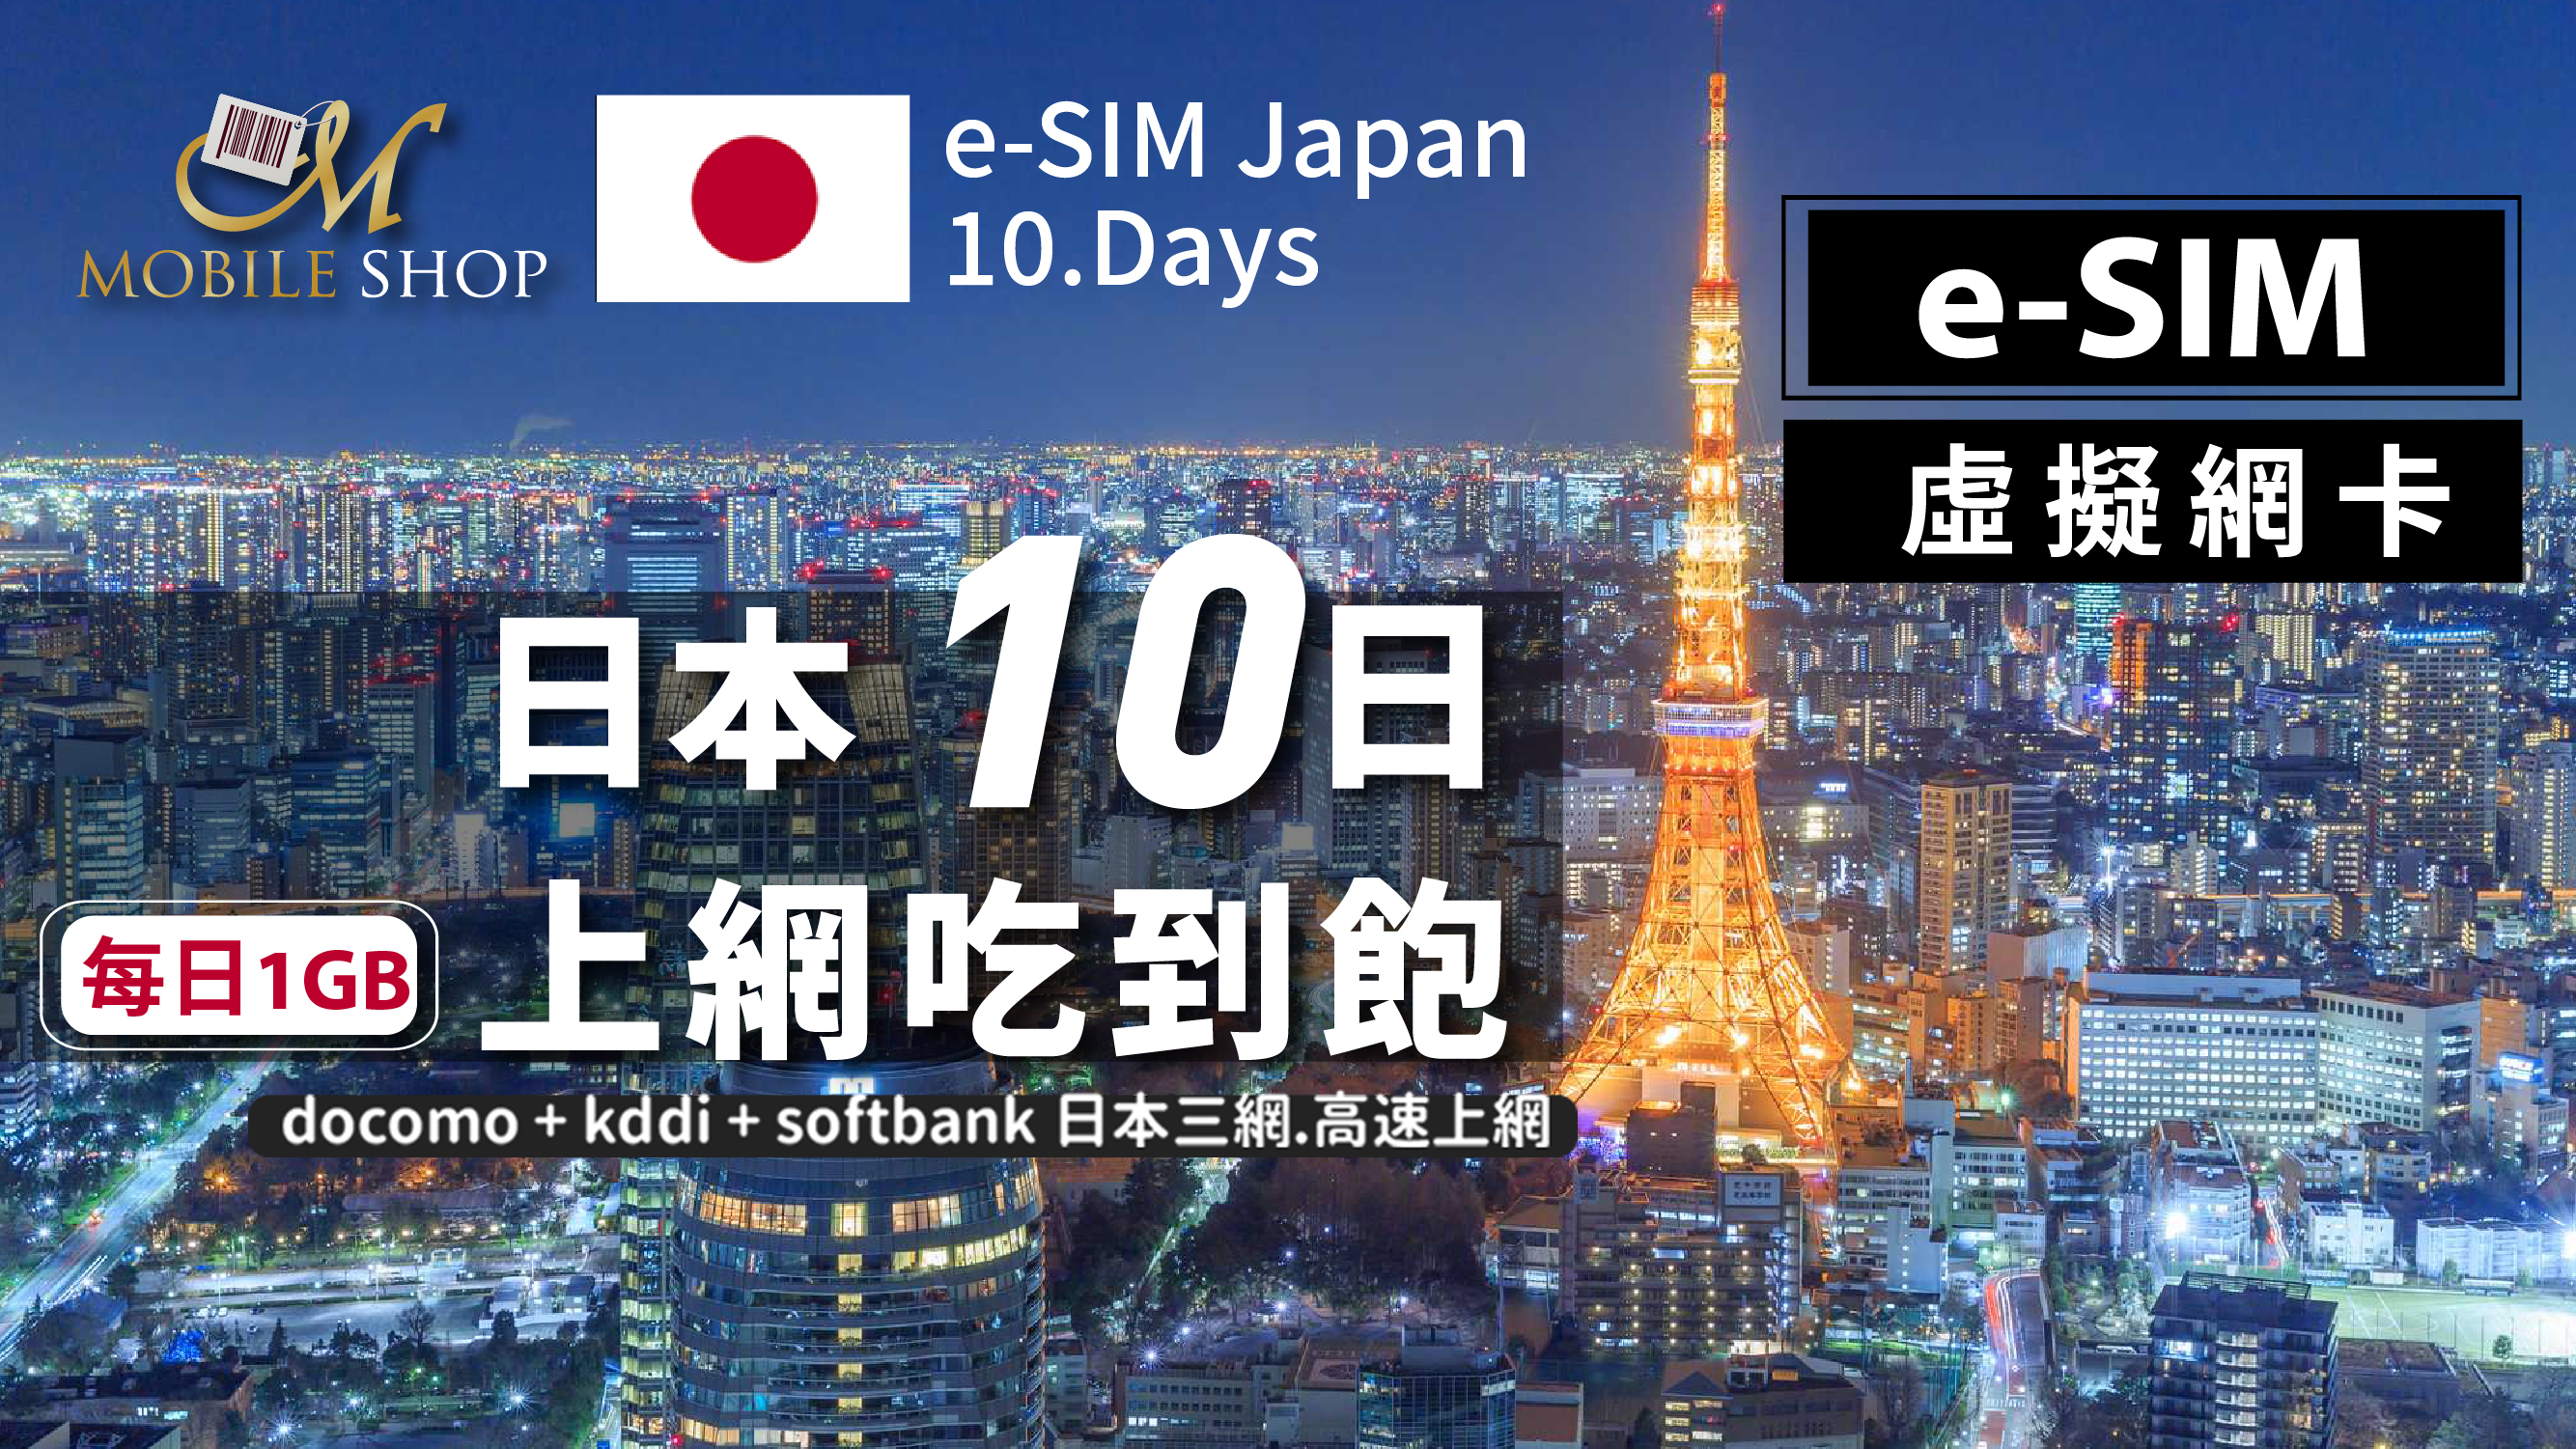 eSIM Japan 10days/1GB day unlimited data